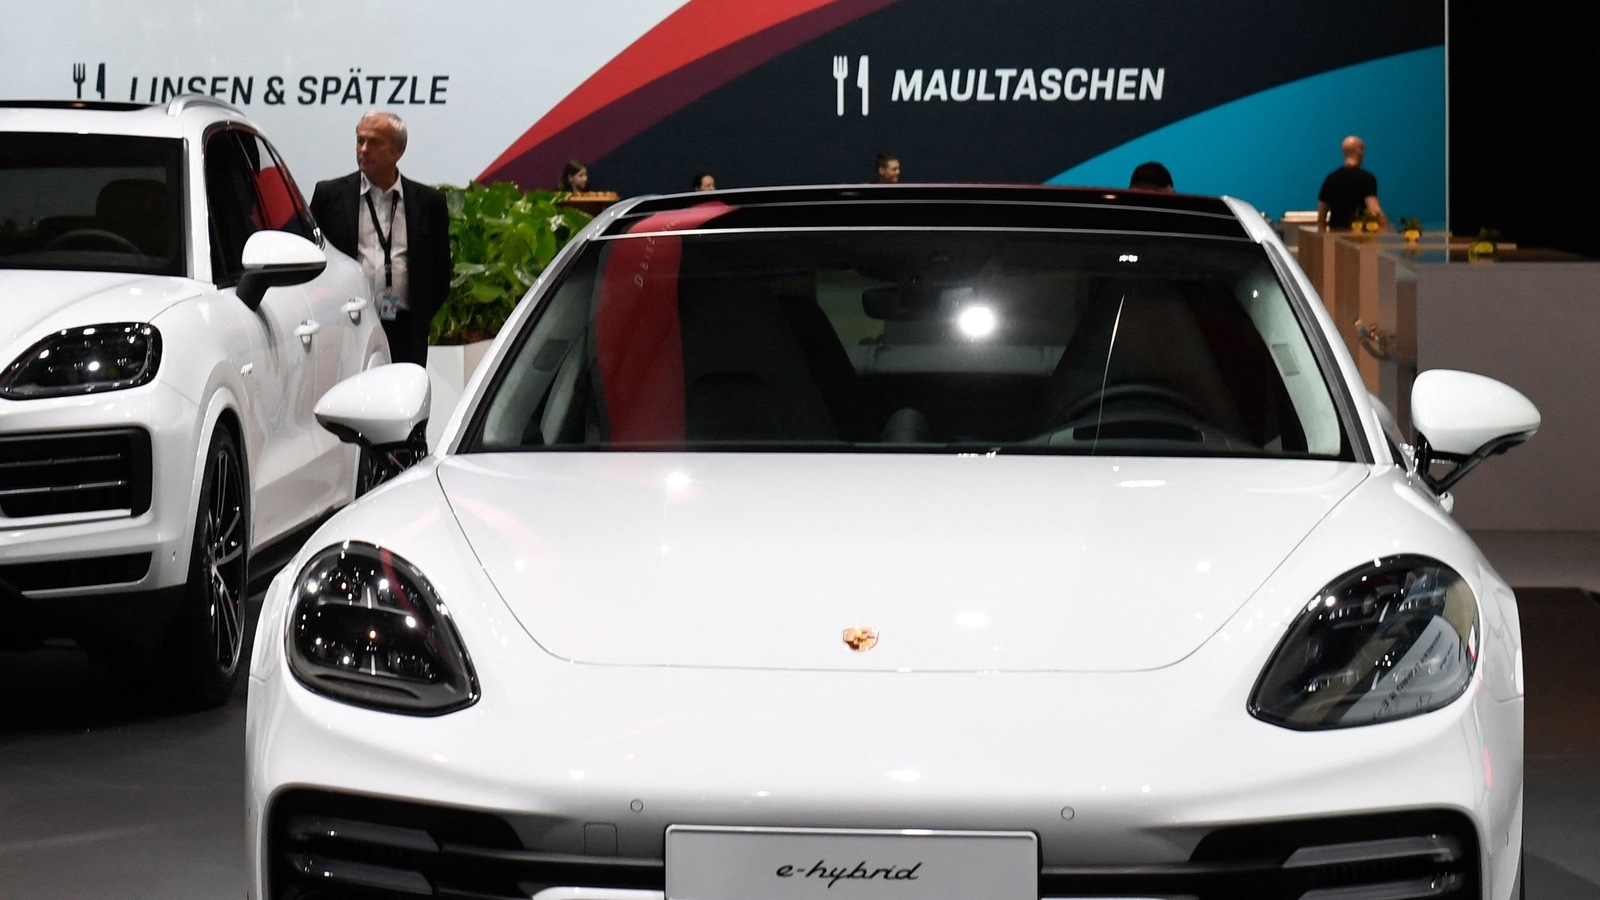 Porsche Design Head Says Chinese EVs Spur Edgier Car Concepts